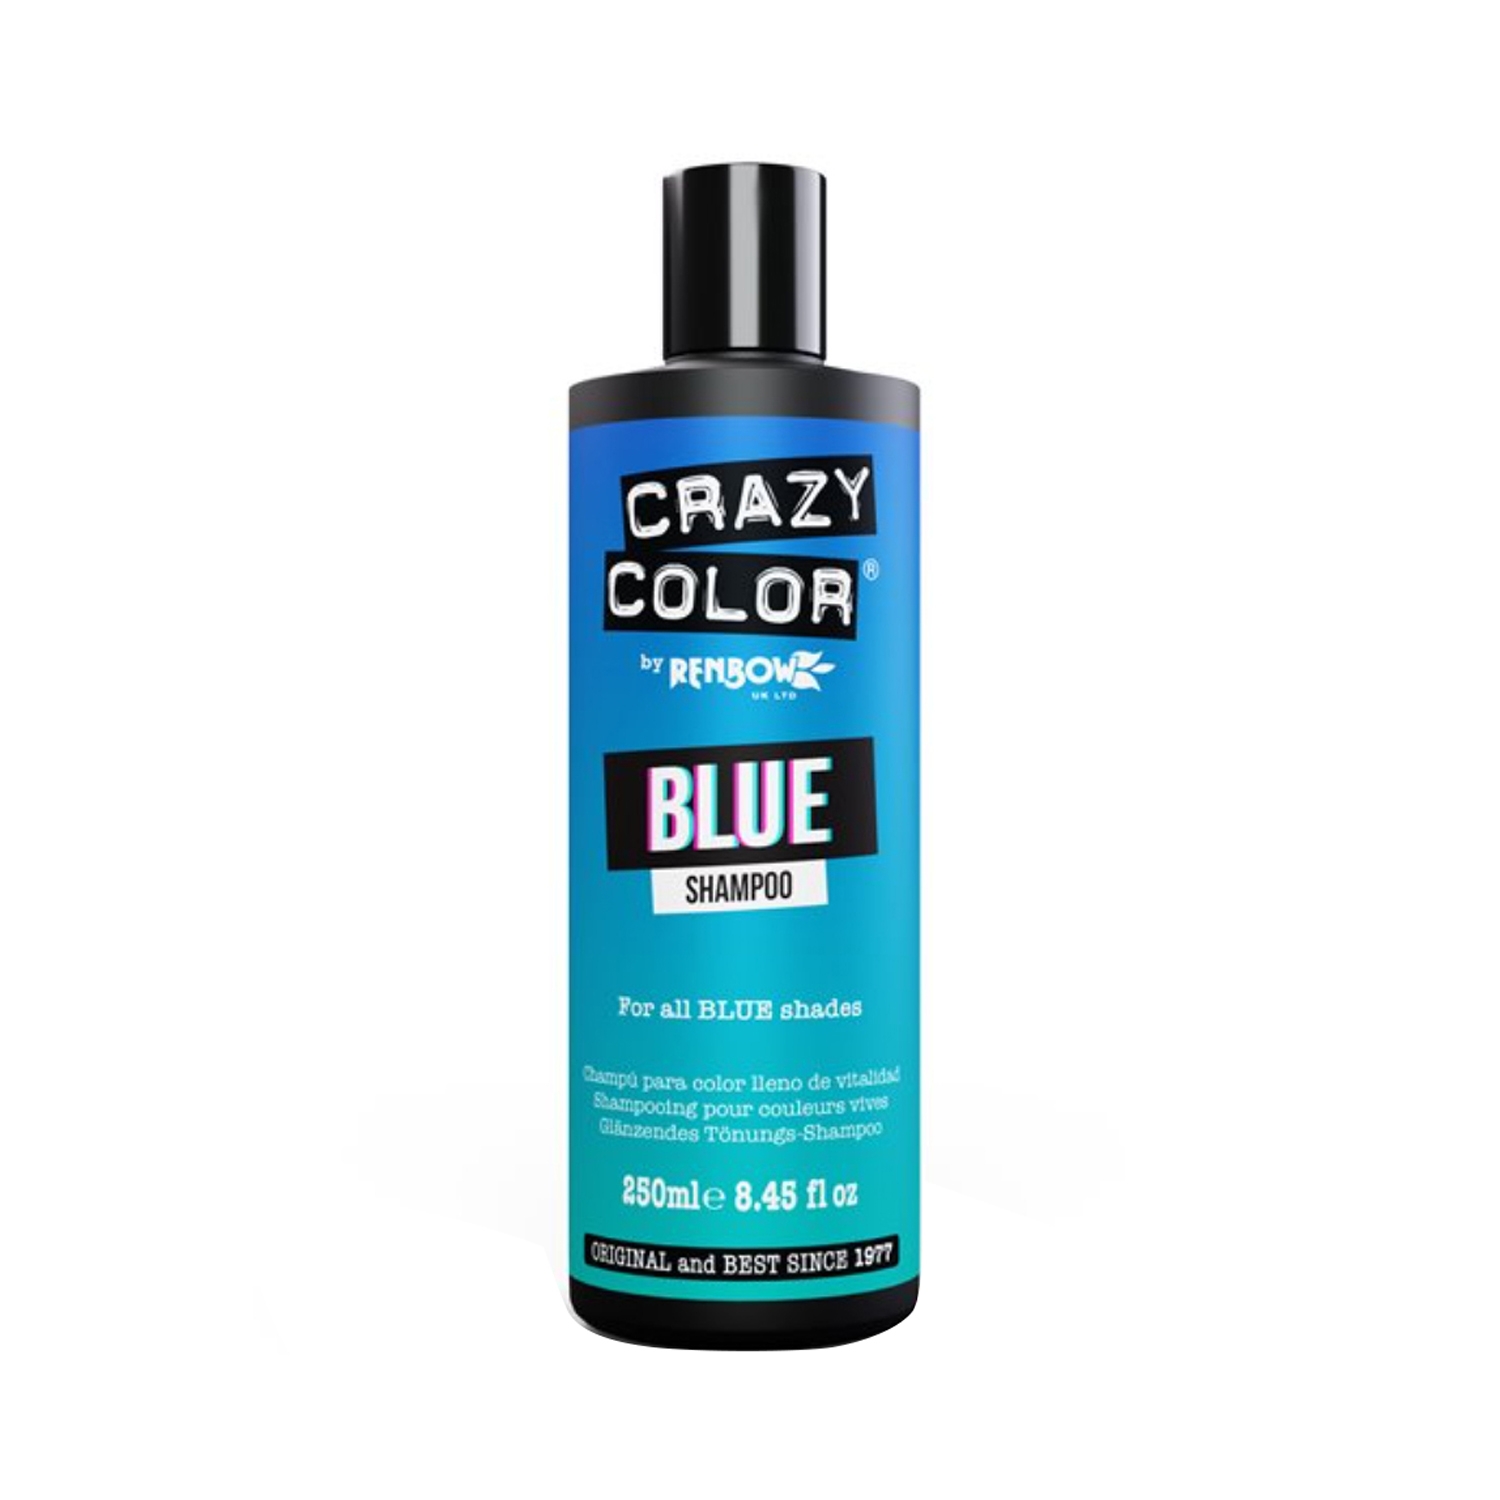 Crazy Color Shampoo - Blue (250ml)